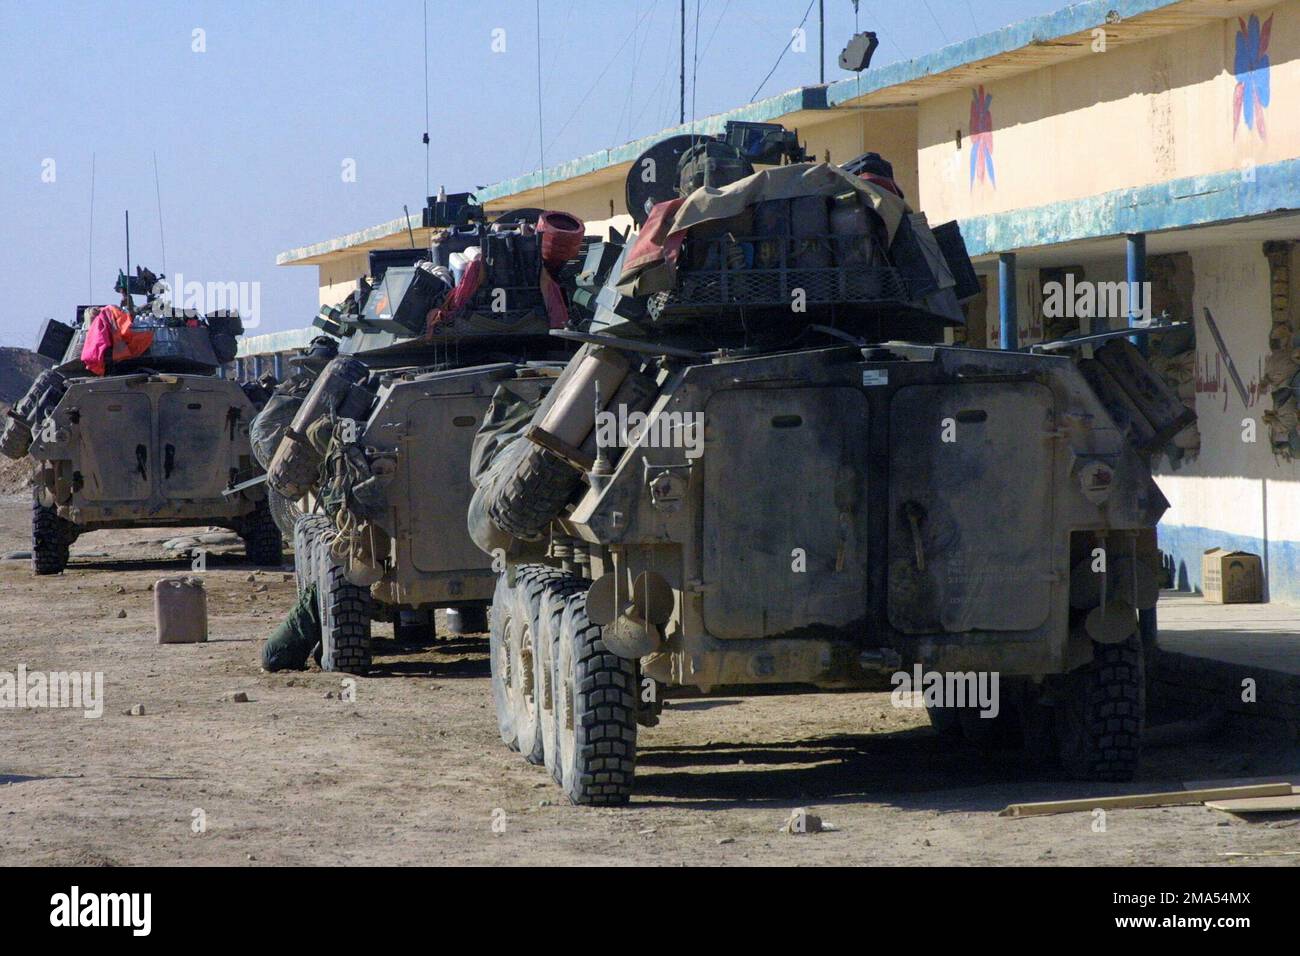 041216-M-2353F-009. Leichte gepanzerte Fahrzeuge (LAV-25) DES US Marine Corps (USMC), die dem 1. Aufklärungsbataillon der leichten gepanzerten Aufklärung (LARB) zugeteilt wurden, sind nach Abschluss der Operationen in Falludscha, Irak, während der Operation IRAQI FREEDOM II im Camp Owen stationiert Stockfoto